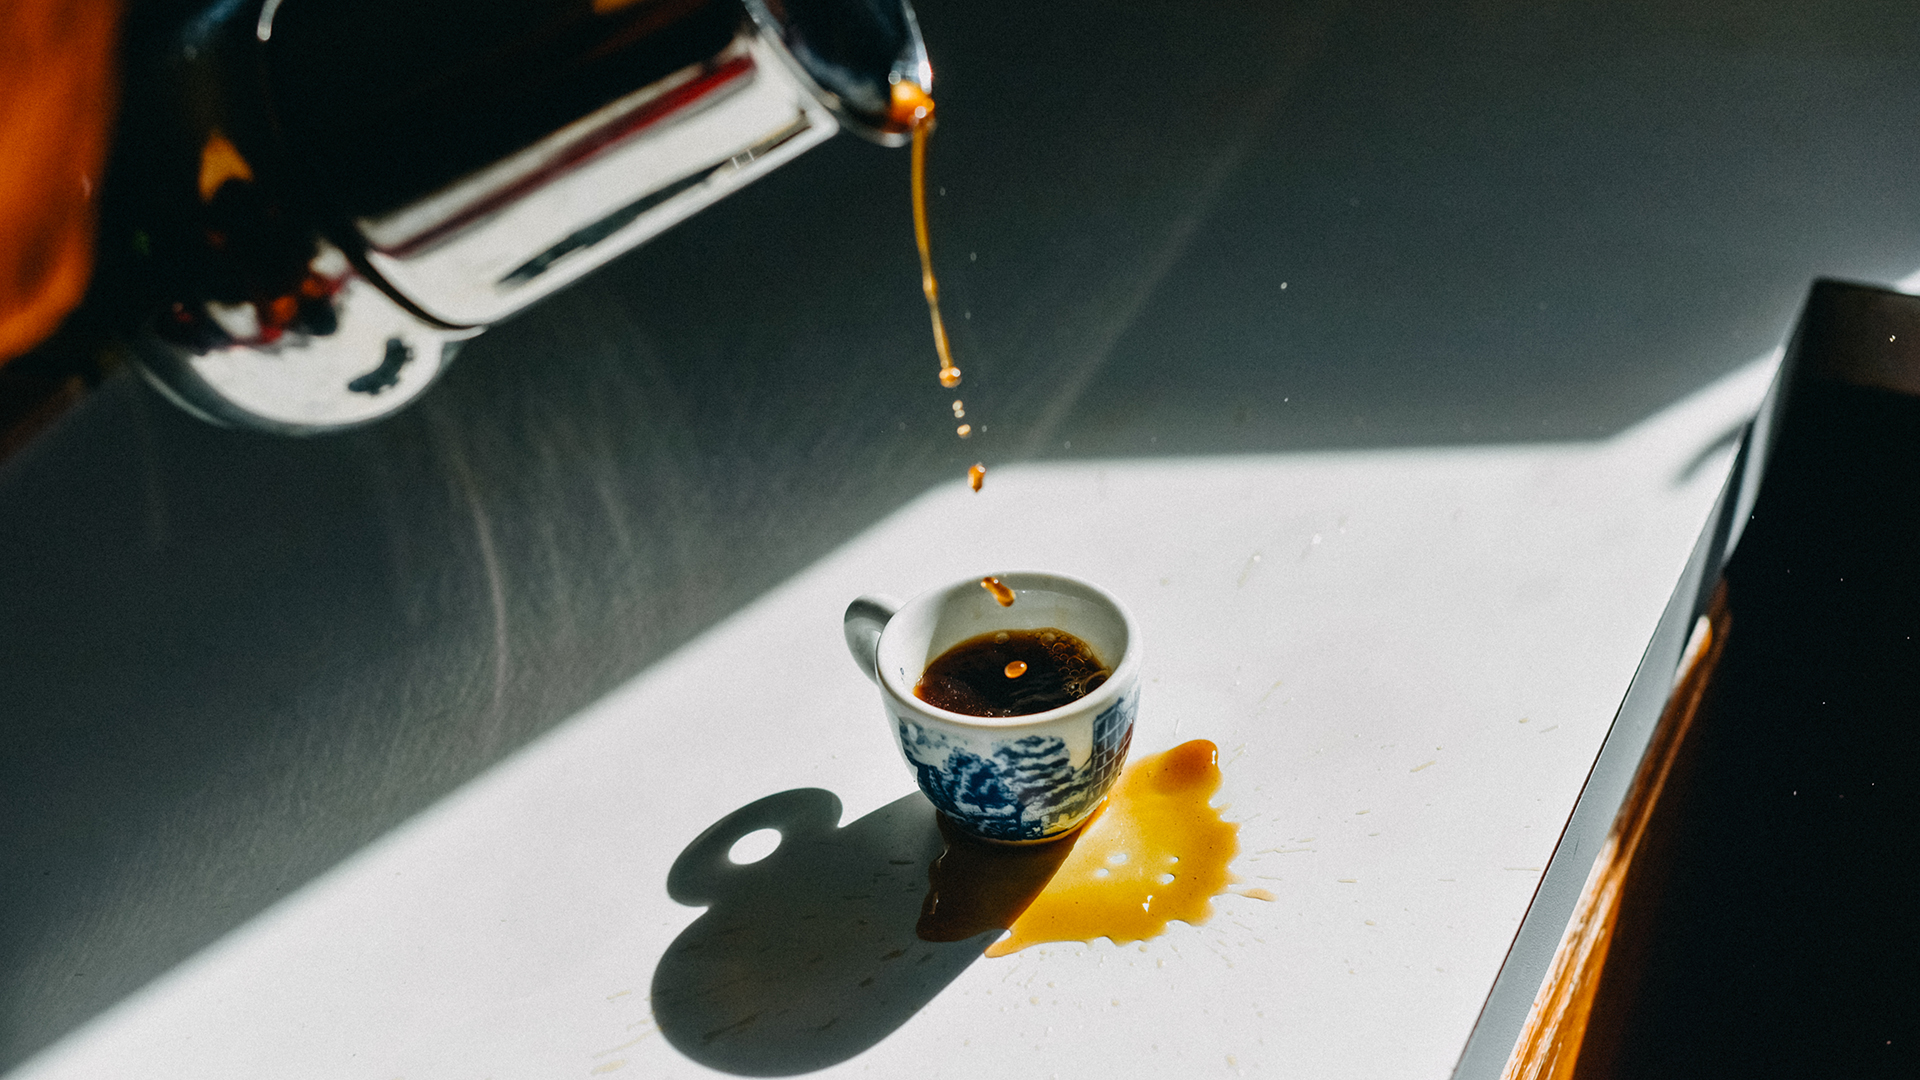 Tomar el café en una cafetería está muy bien, pero preparar el café en casa evita el consumo de ingredientes procesados, que a la larga podrían dañar algunos órganos del cuerpo (Getty Images)